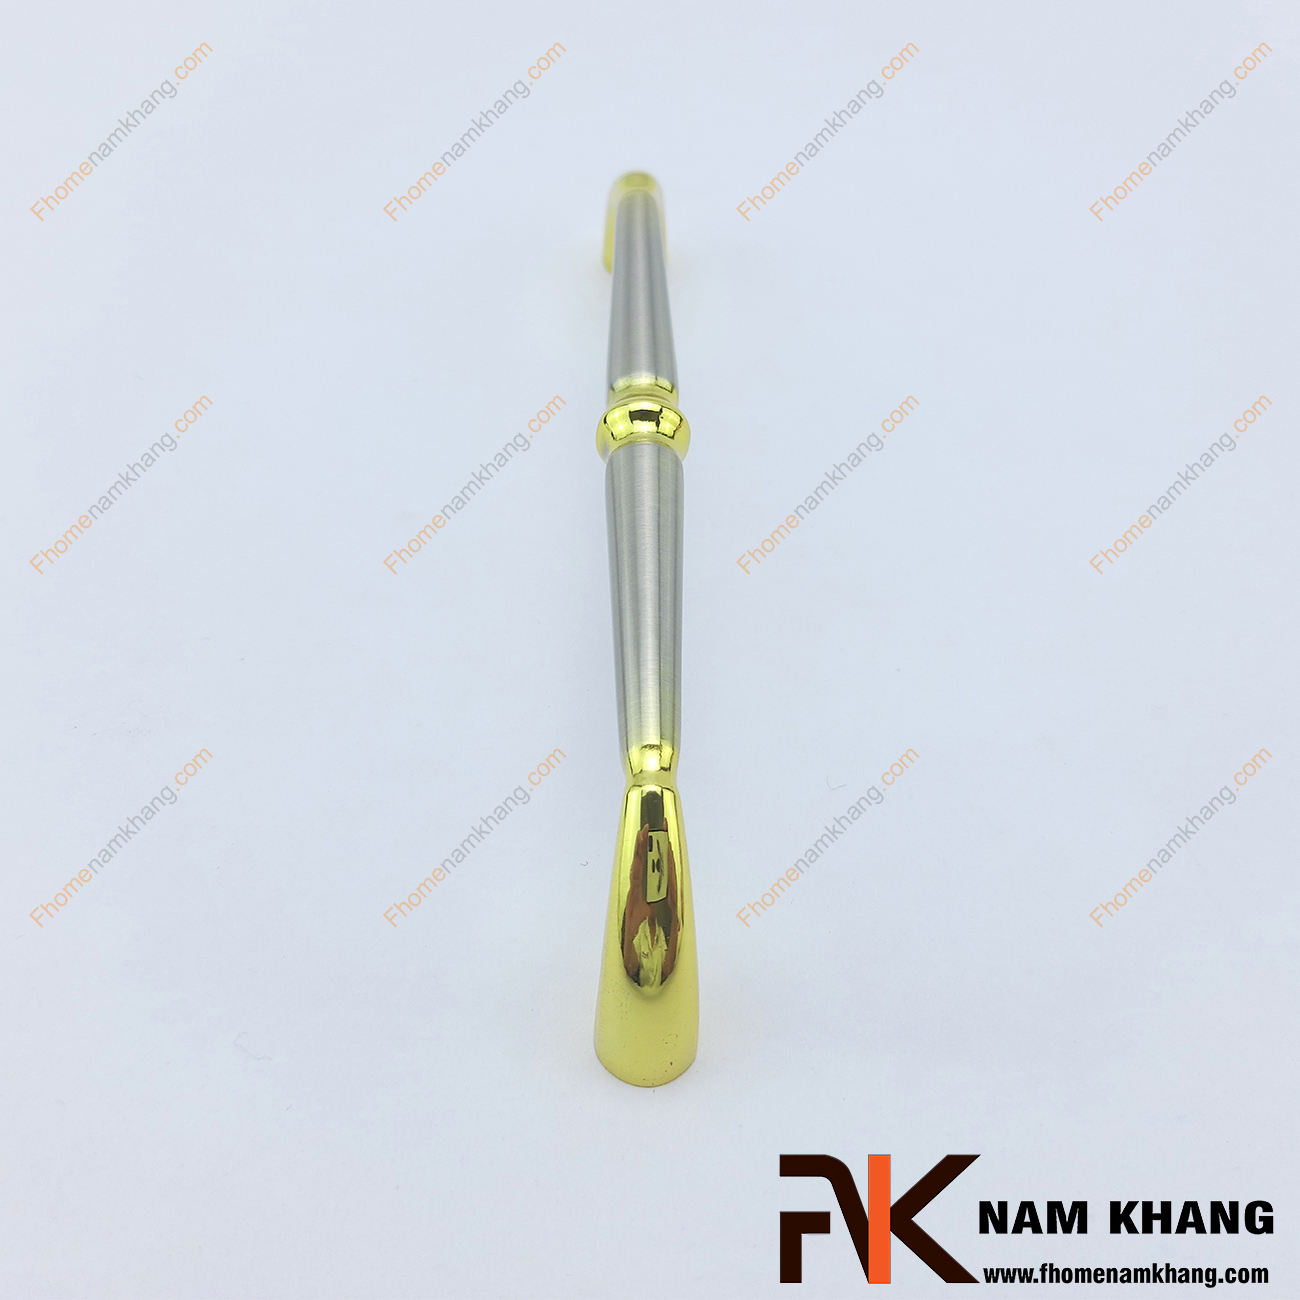 Tay nắm tủ thanh tròn NK167-128XV là một dạng thiết kế tay nắm đặc biệt với khuôn dạng tròn được mạ 2 lớp màu đặc trưng trên chất liệu hợp kim cao cấp.